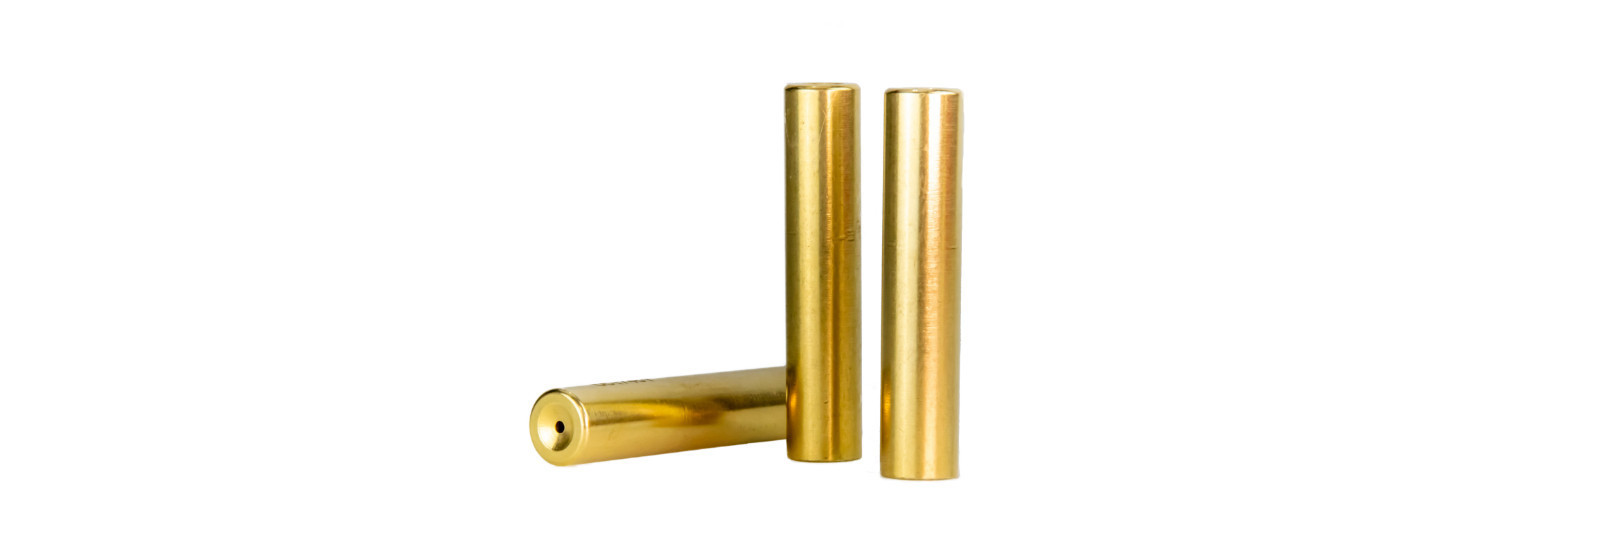 10 brass cases for .458 modern bullet